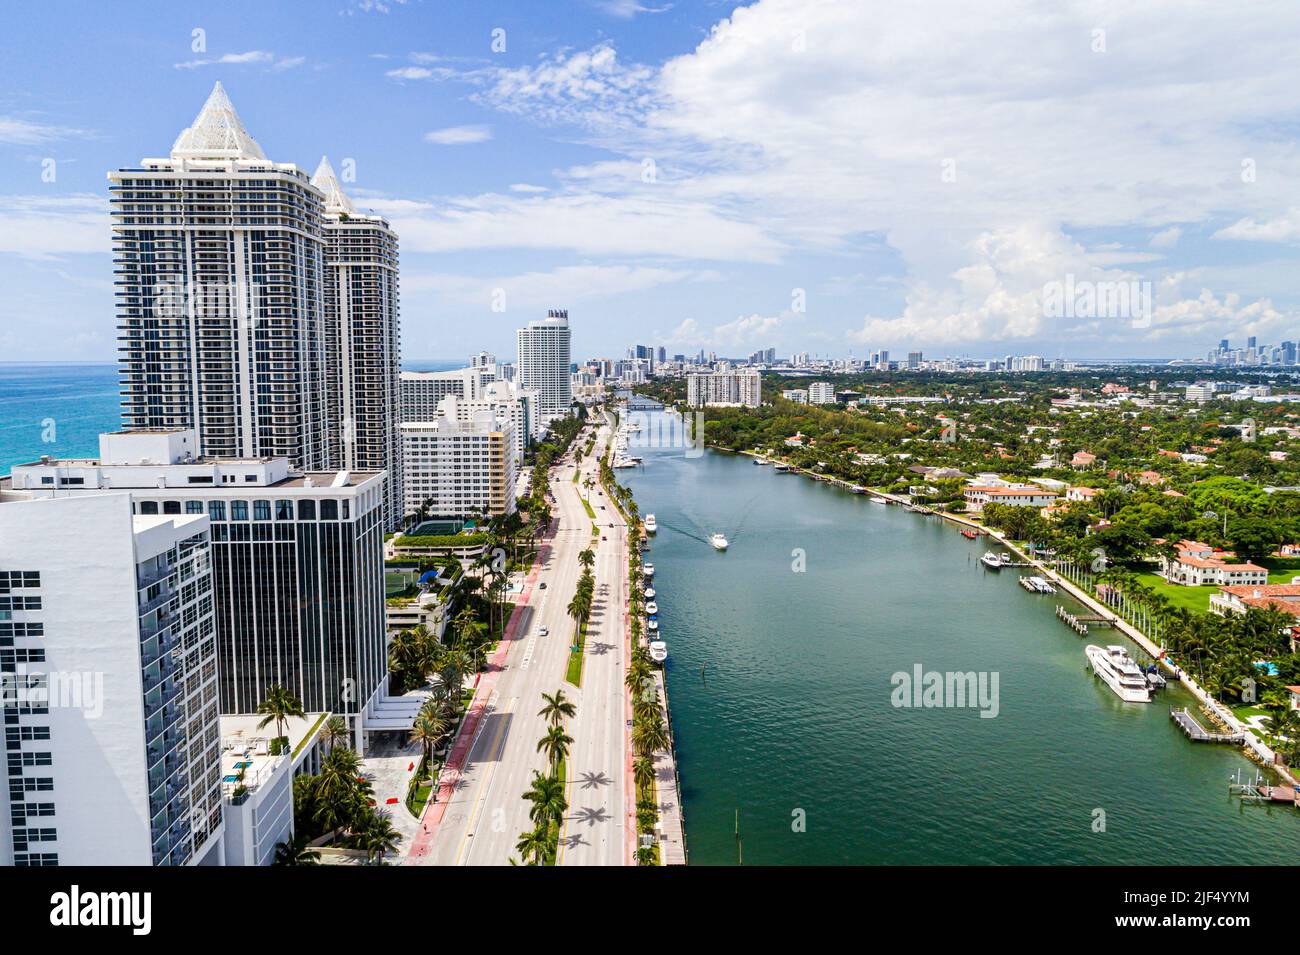 Miami Beach Florida, vista aérea desde arriba, Indian Creek La Gorce Island Blue Green Diamond edificios de apartamentos de lujo de gran altura, Collins Ave Foto de stock